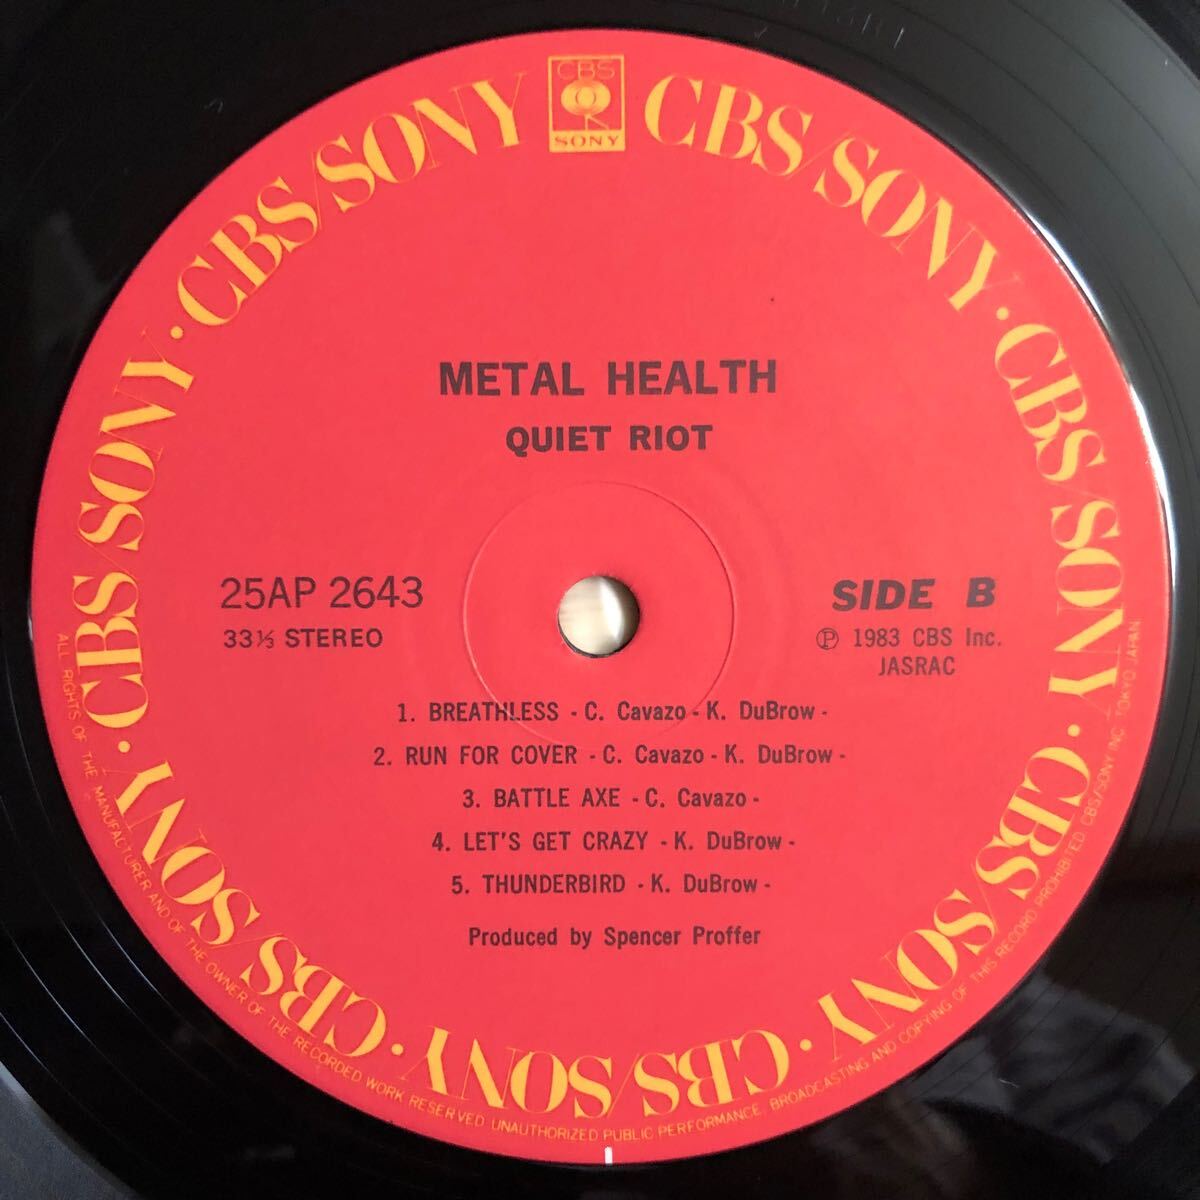 LP QUIET RIOT クワイエット・ライオット/METAL HEALTH メタル・ヘルス ランディ・ローズに捧ぐ[国内盤:1983年3作目]HARD ROCK HEAVY METALの画像4